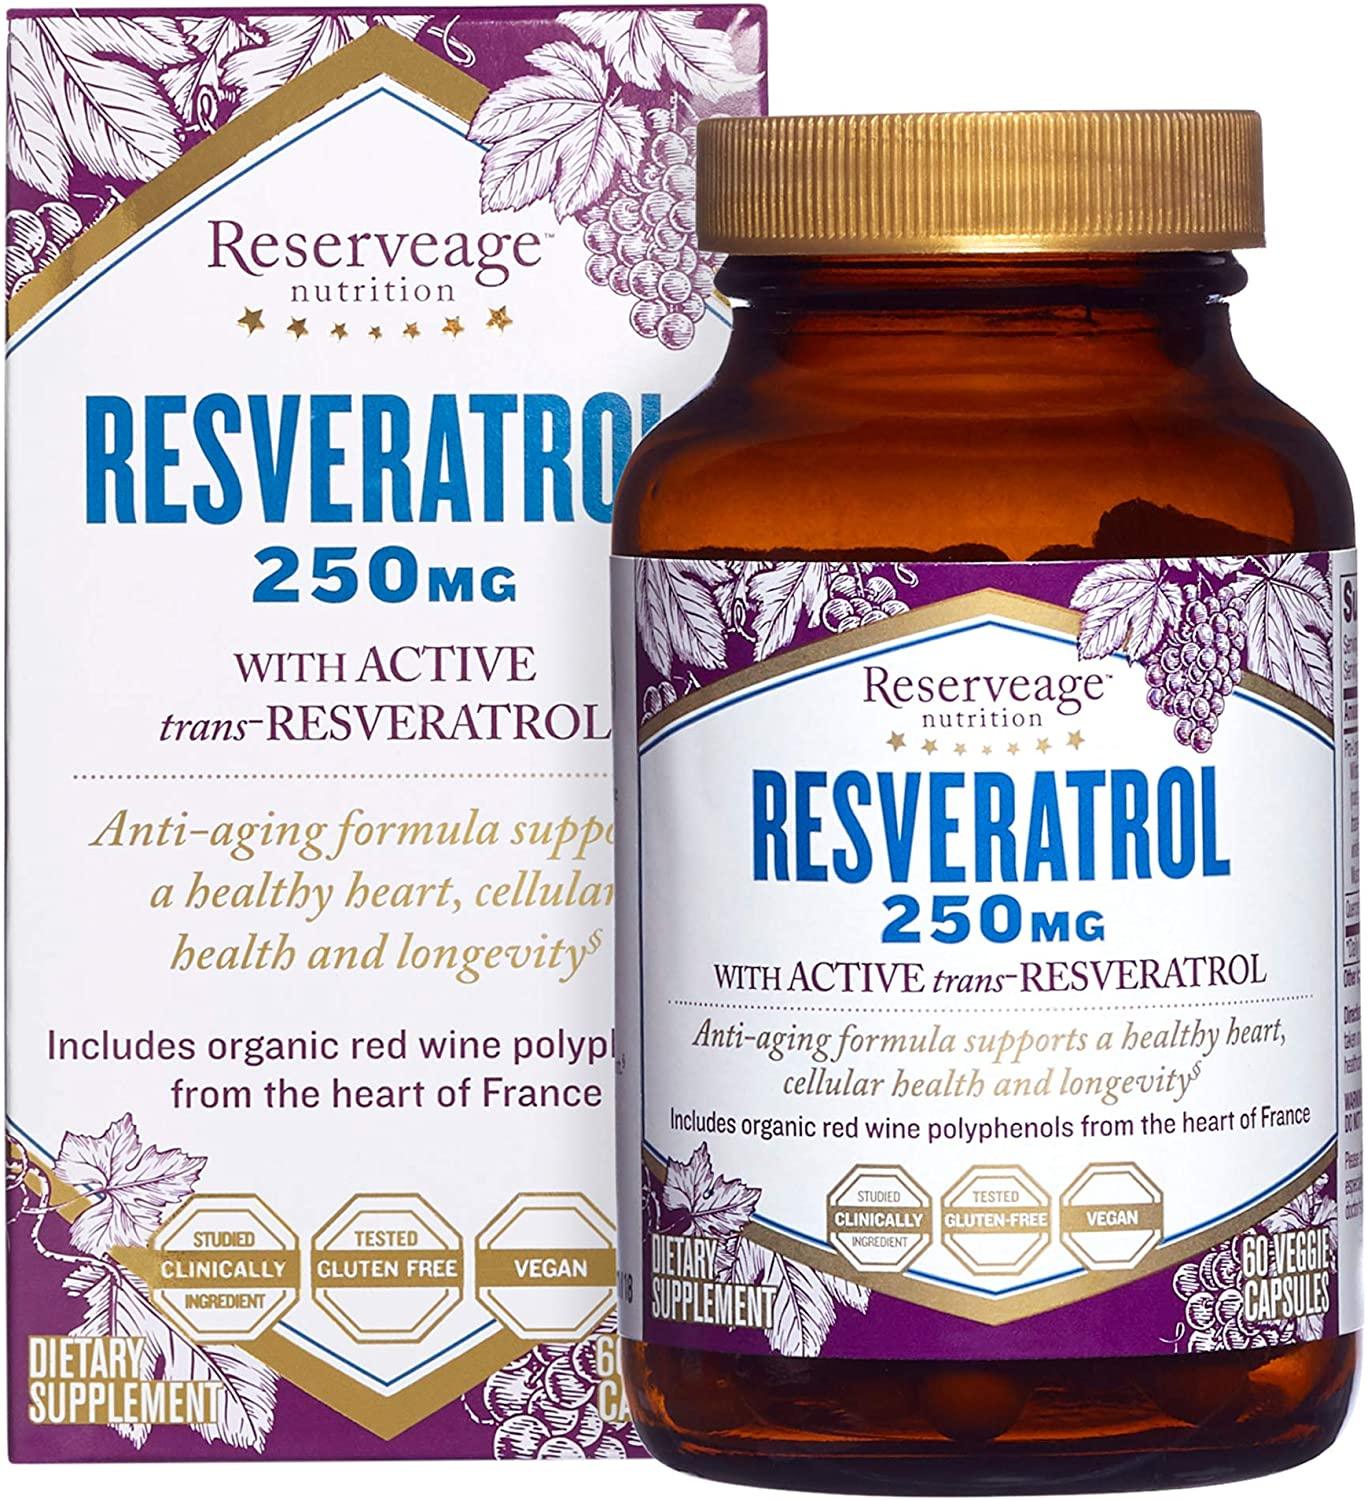 Reserveage Resveratrol 250mg - mondialpharma.com